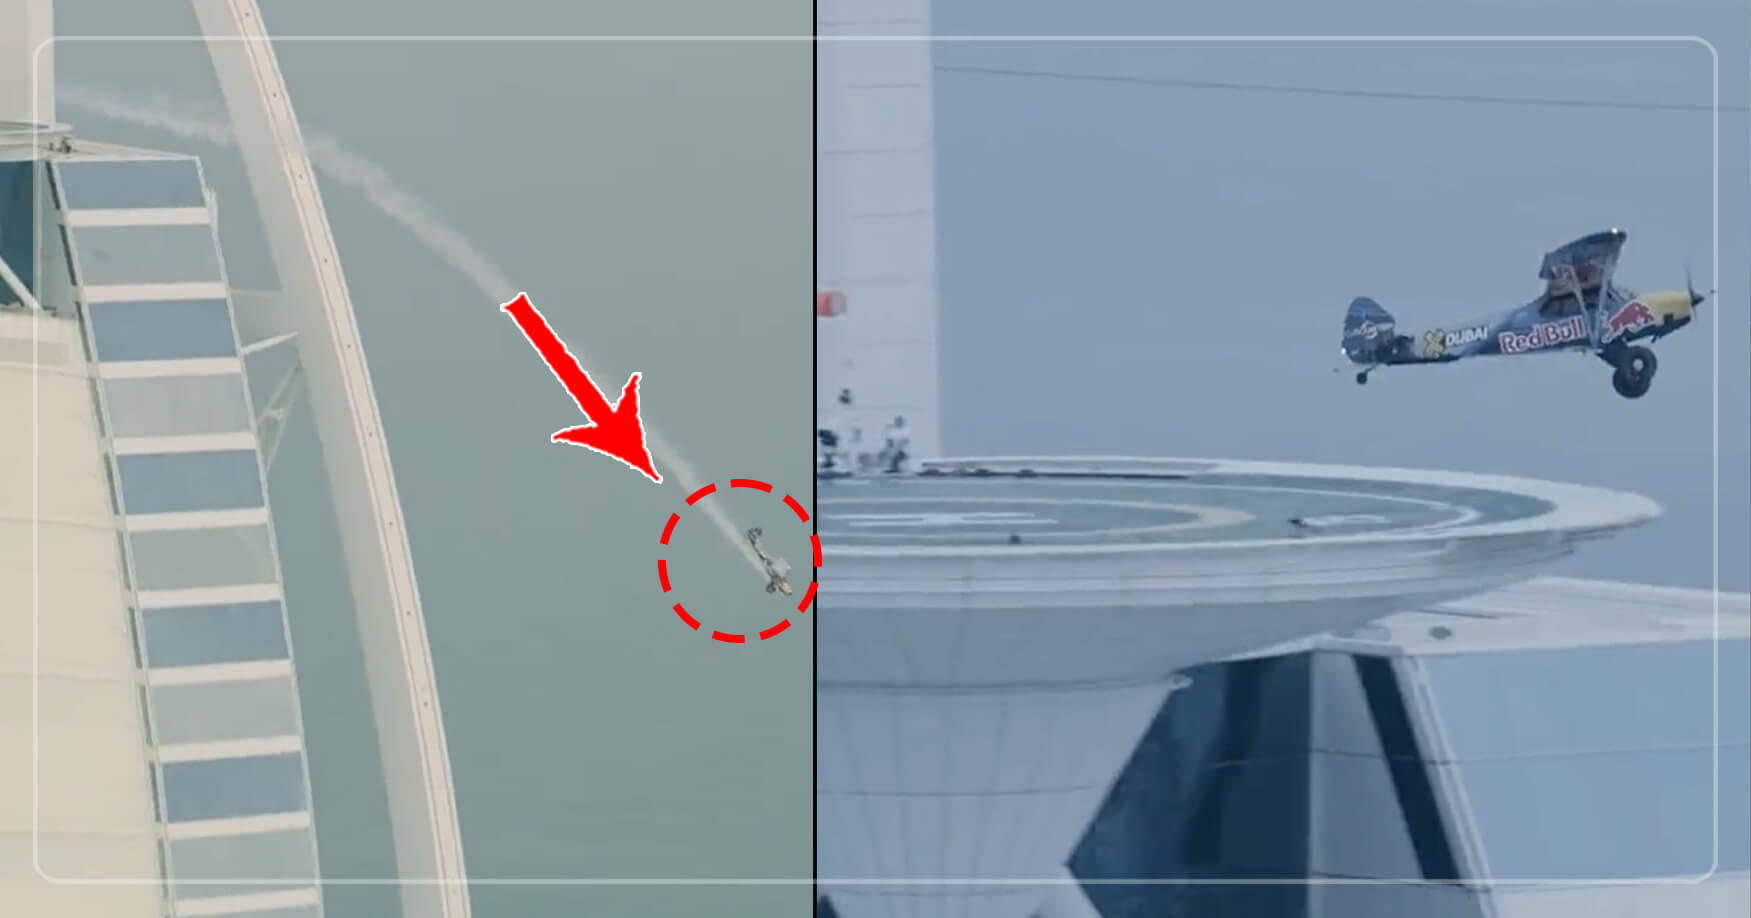 સેંકડો ફૂટ ઊંચાઈ પર બનેલી આ હોટલના હેલિપેડ પર આ વ્યક્તિએ કરાવ્યું પ્લેનનું લેન્ડિંગ, જુઓ રૂંવાડા ઉભા કરી દેનારો વીડિયો